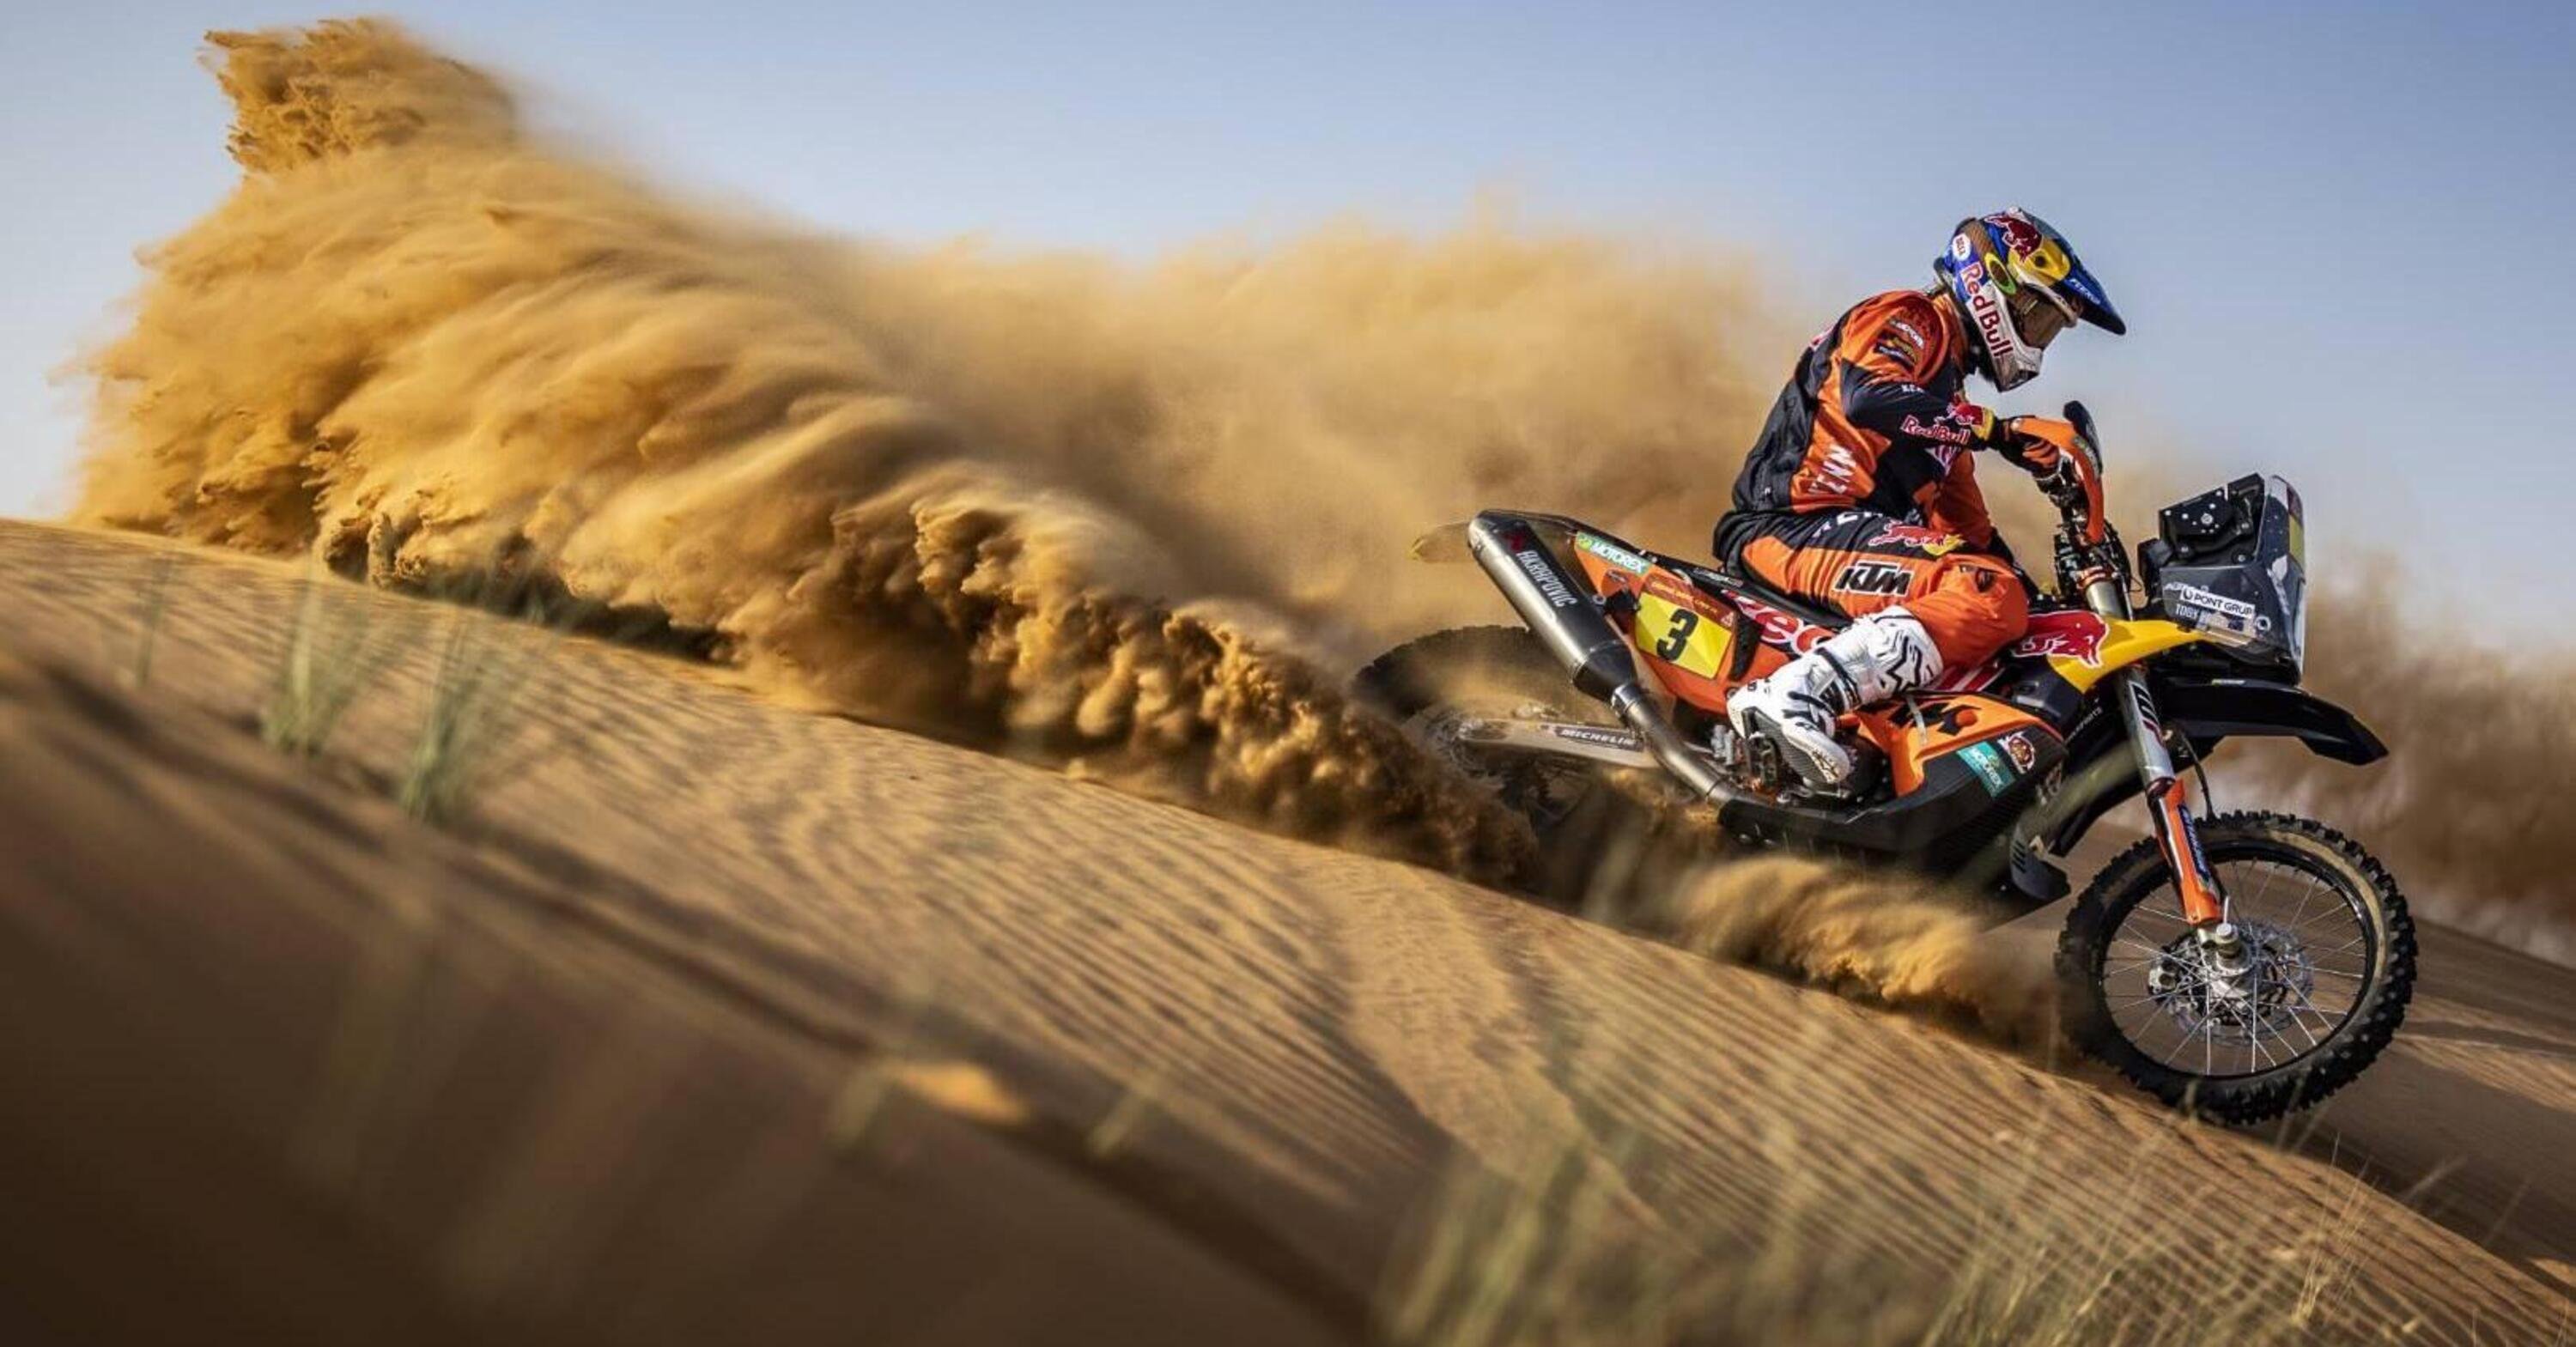 Movimento Dakar. Toby Price-KTM, naturalmente! Per altri 2 anni